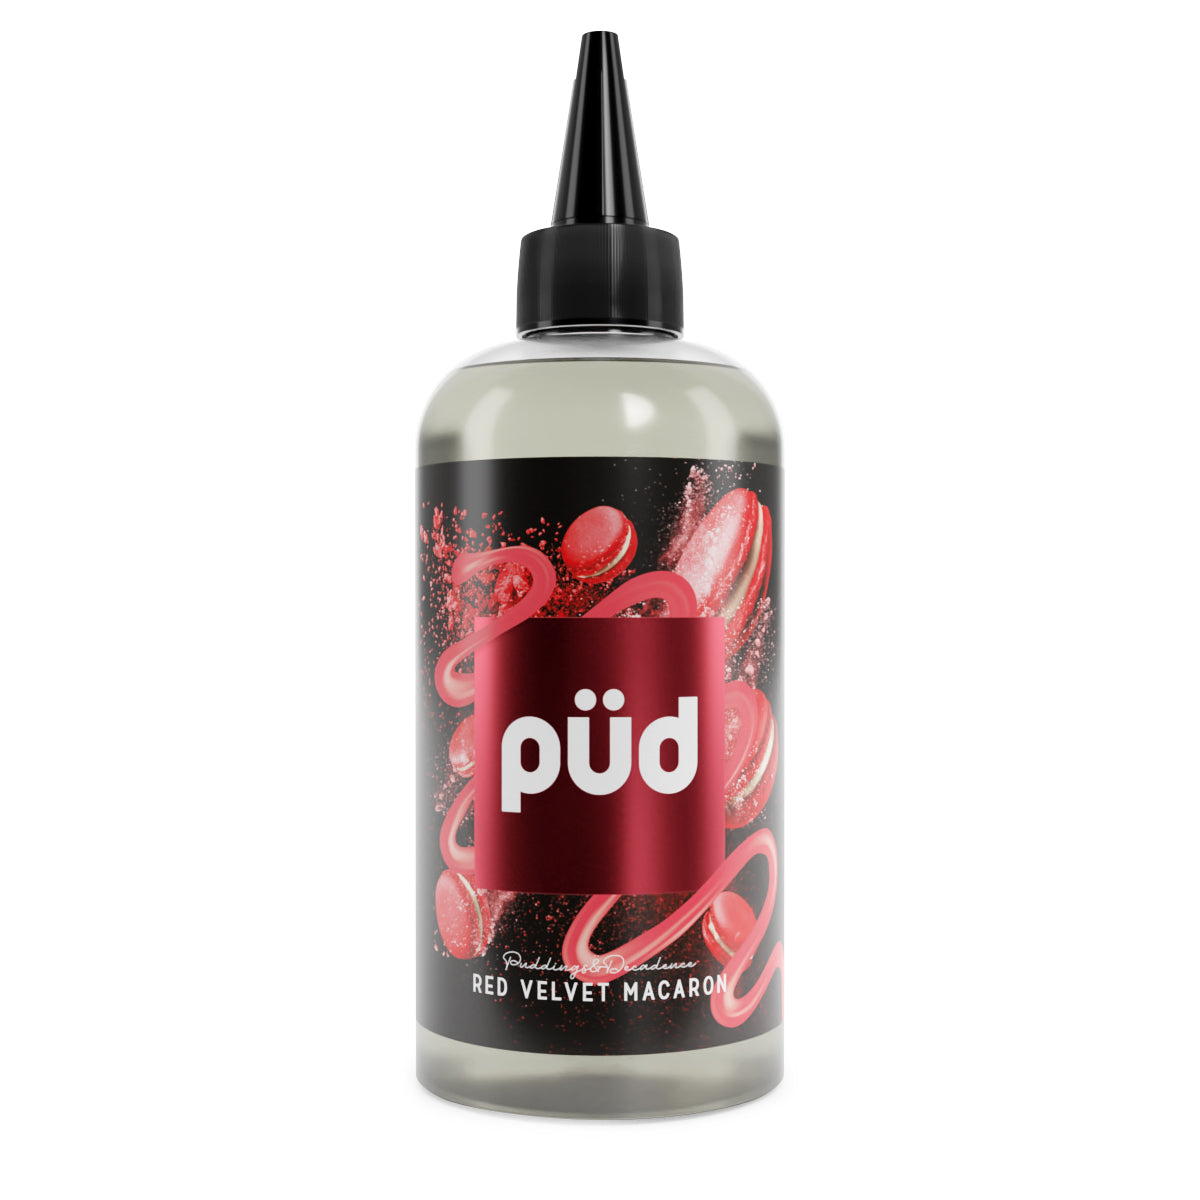 Pud - Red Velvet Macaron - 200ml - 0mg - My Vape Store UK